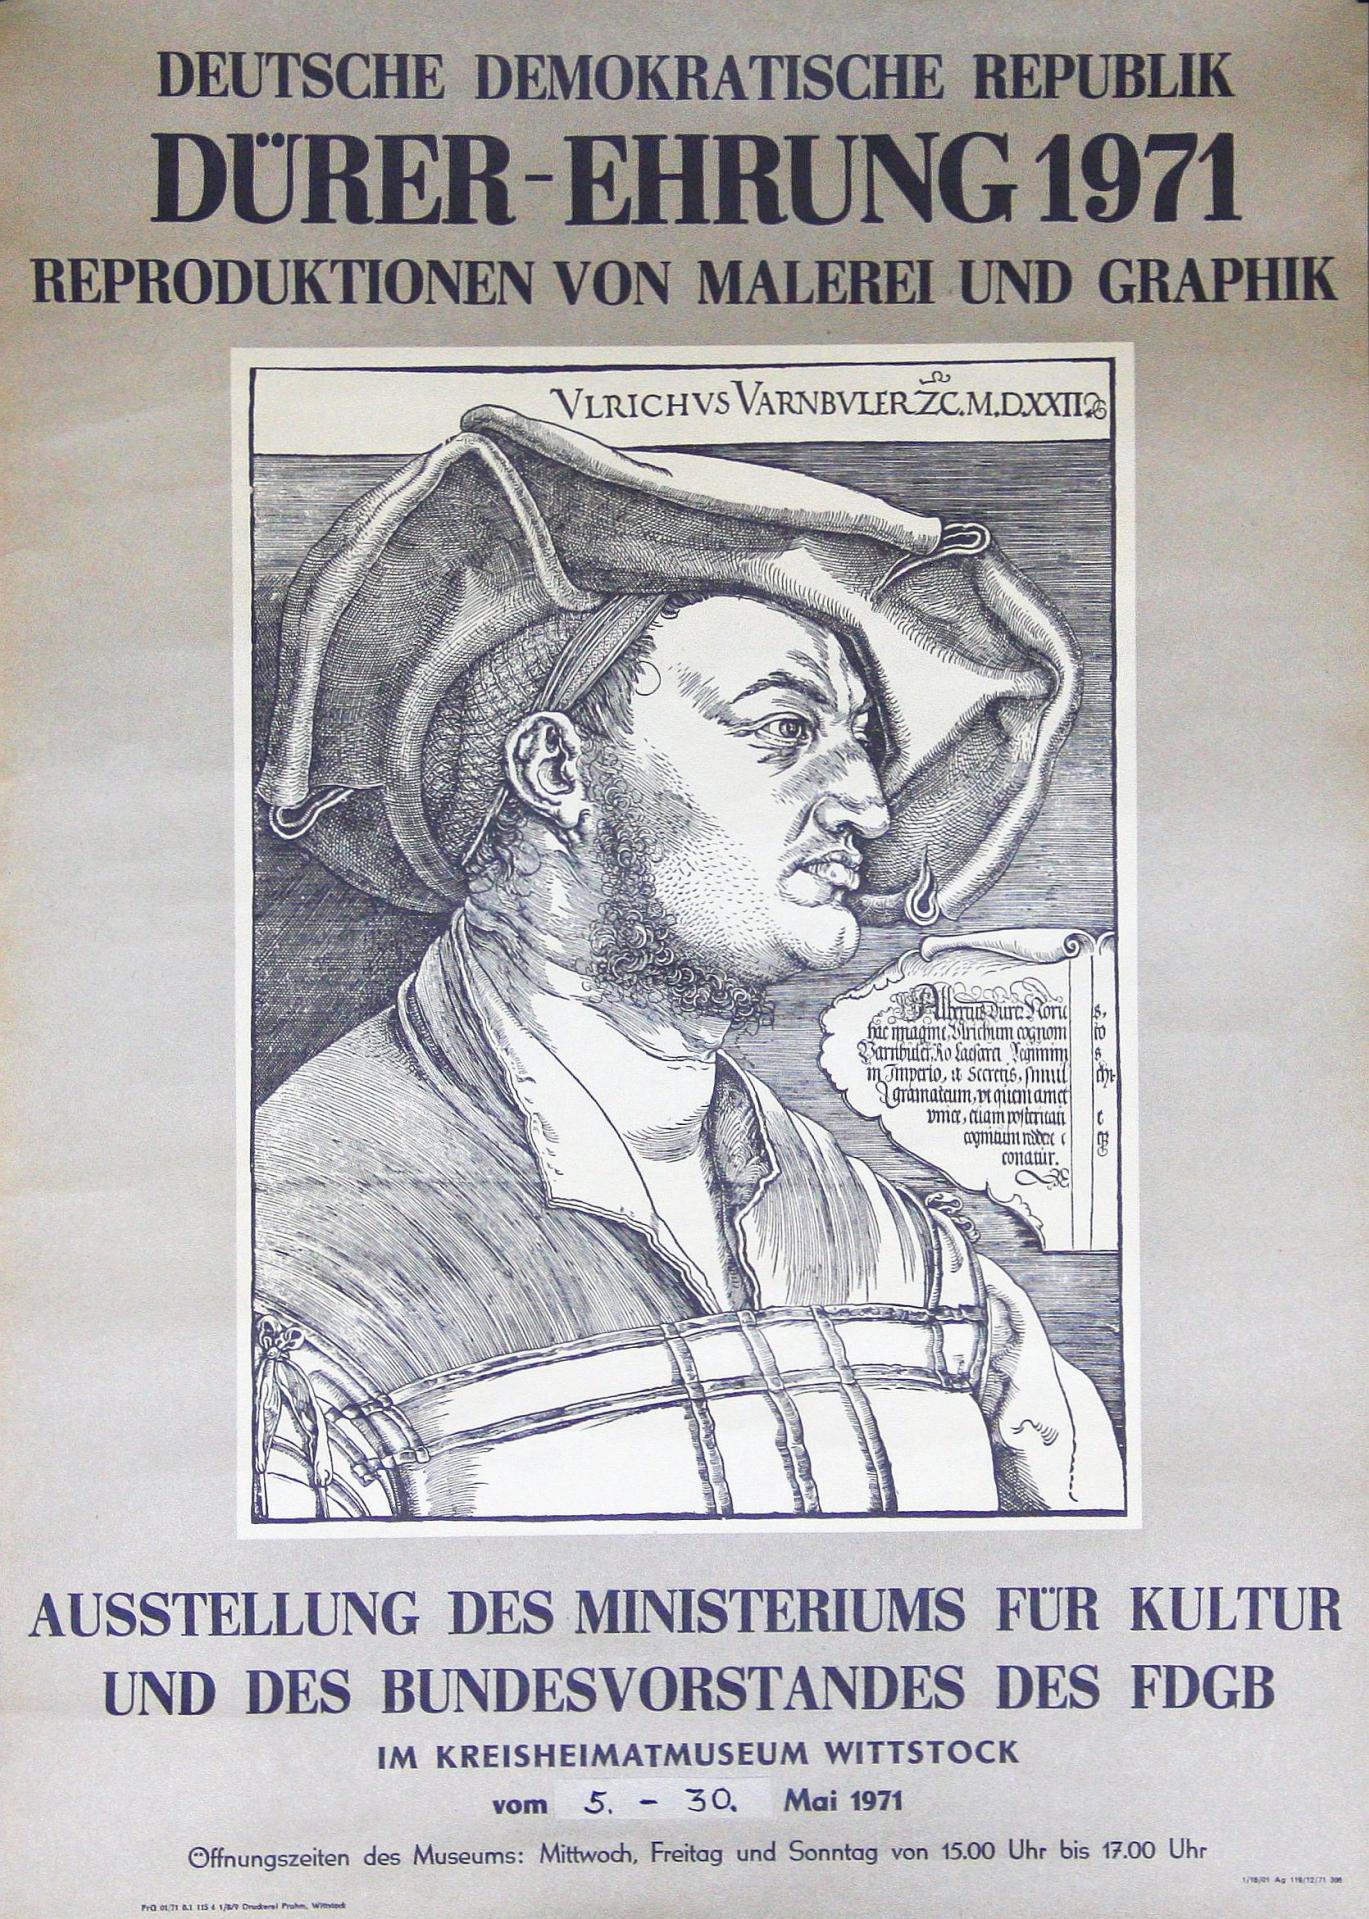 1971 Dürer-Ehrung 1971 - Reproduktionen von Malerei und Graphik